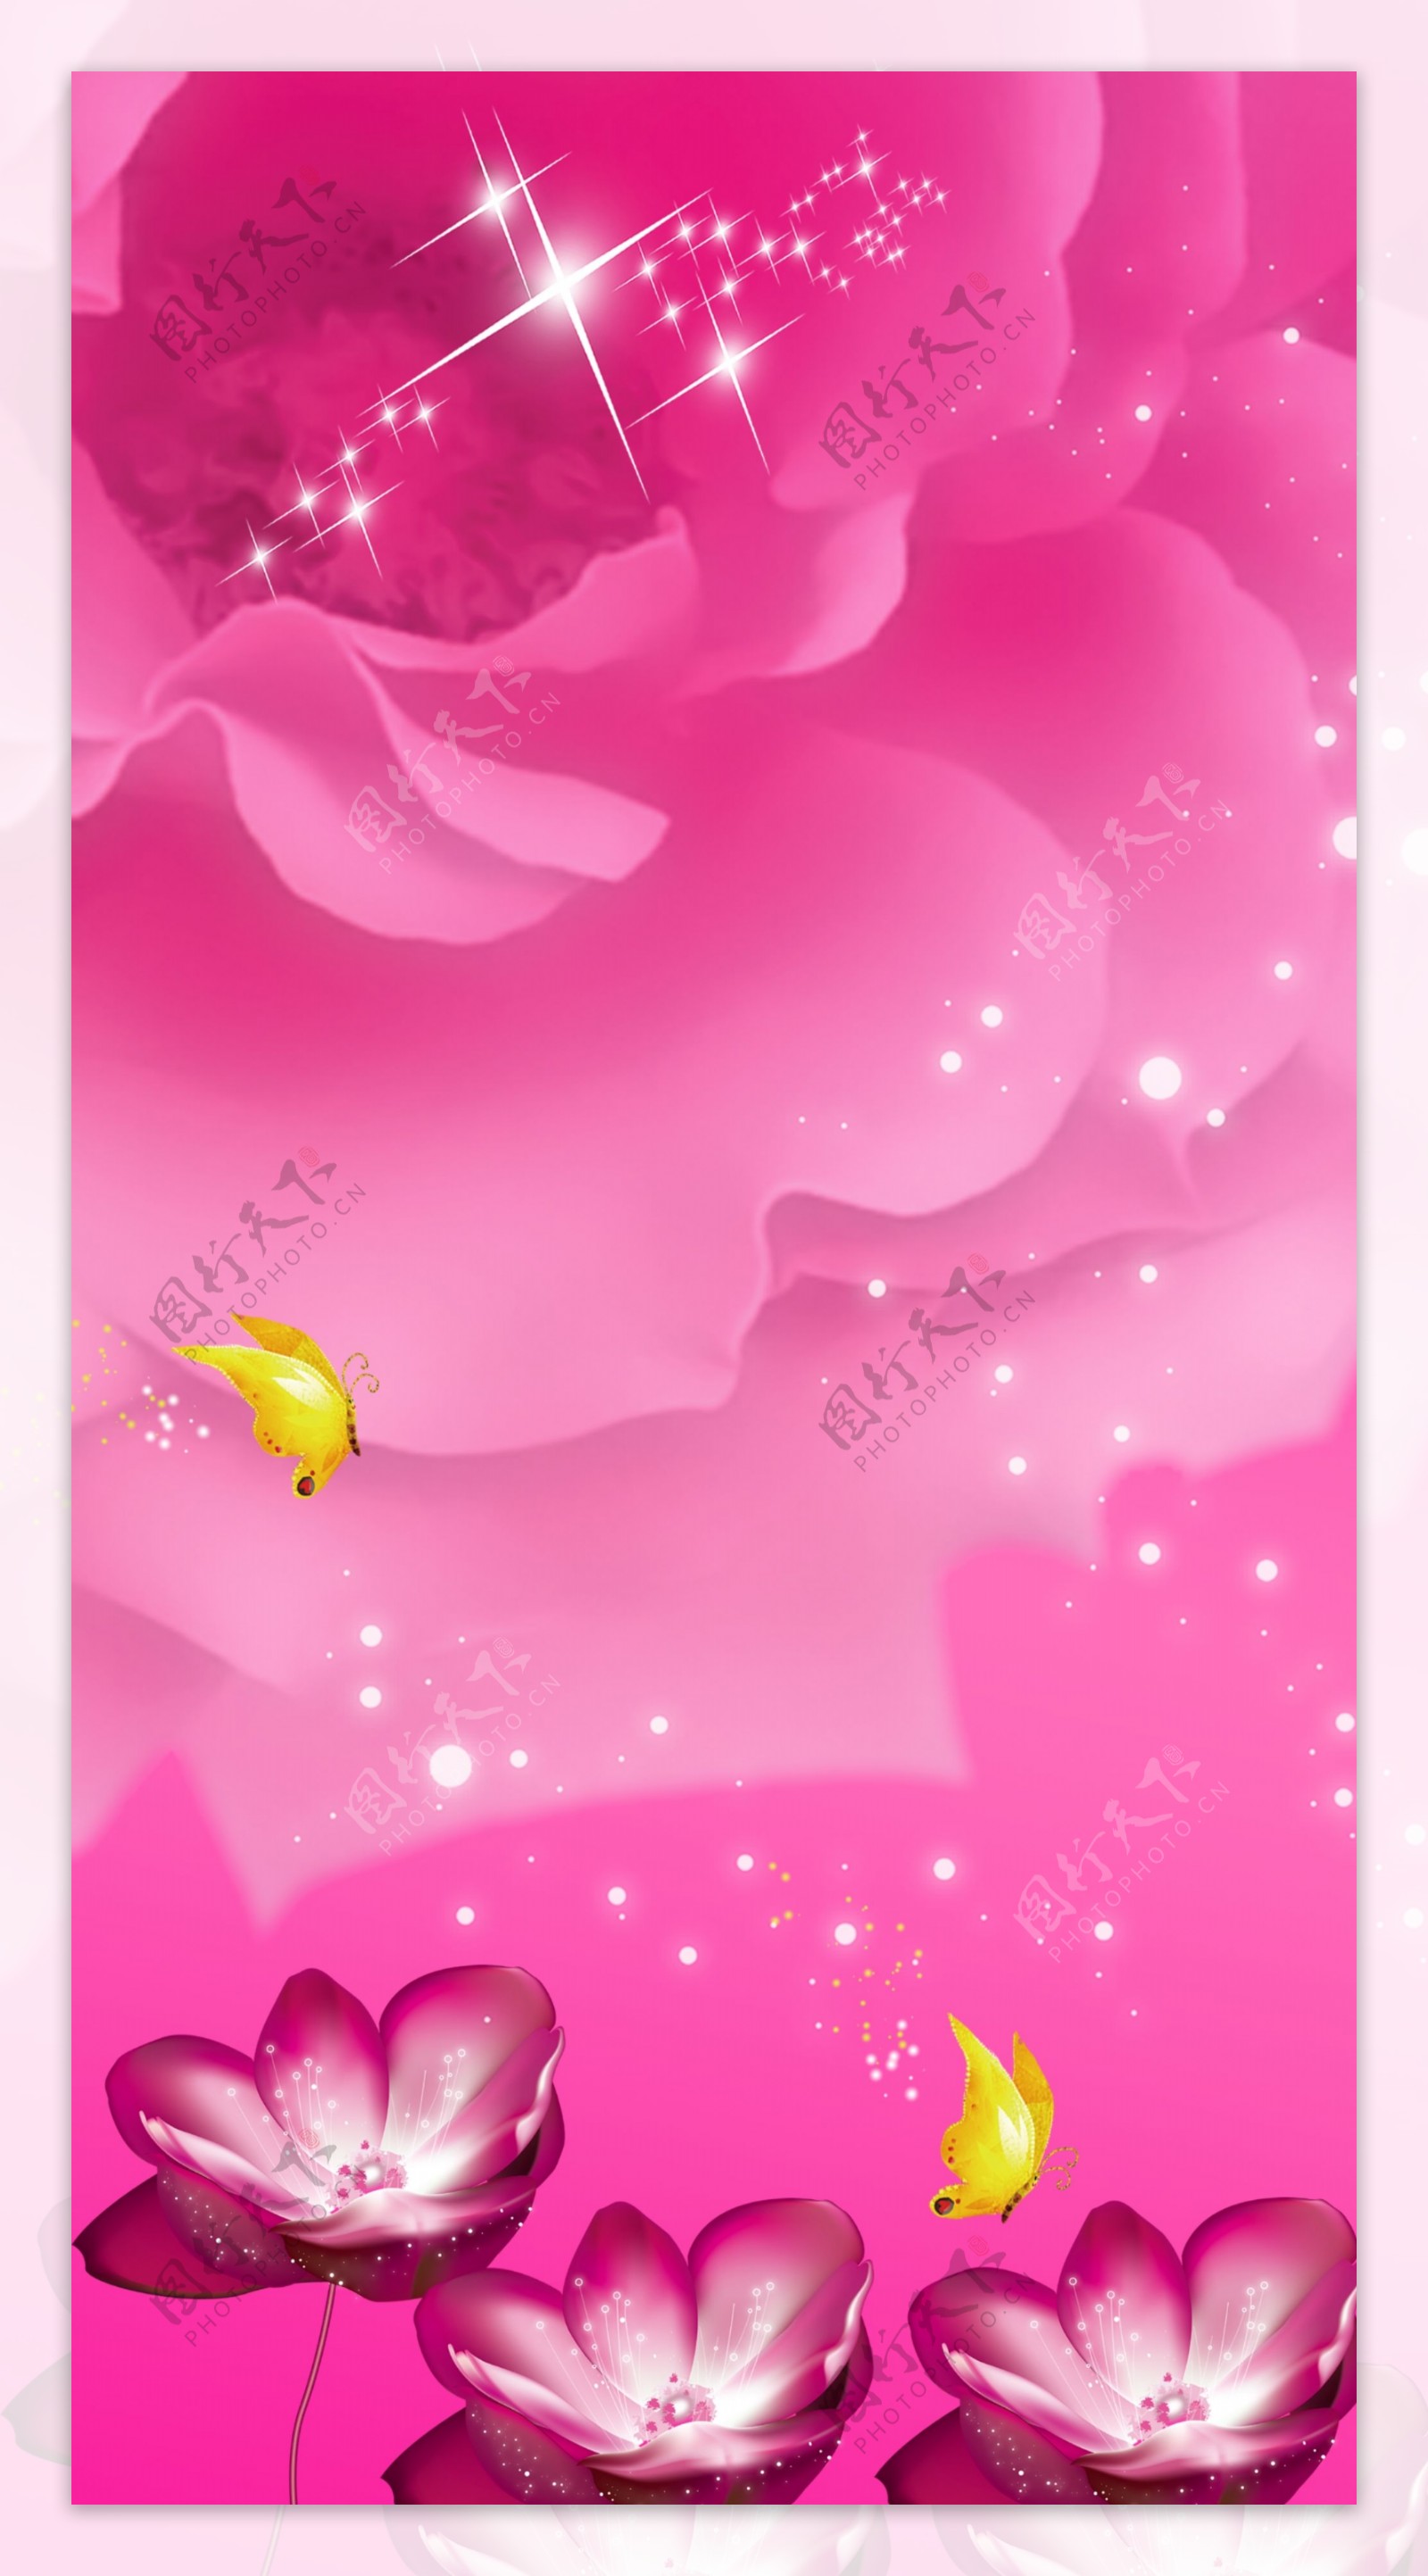 玫瑰蝴蝶星光熠熠粉色背景